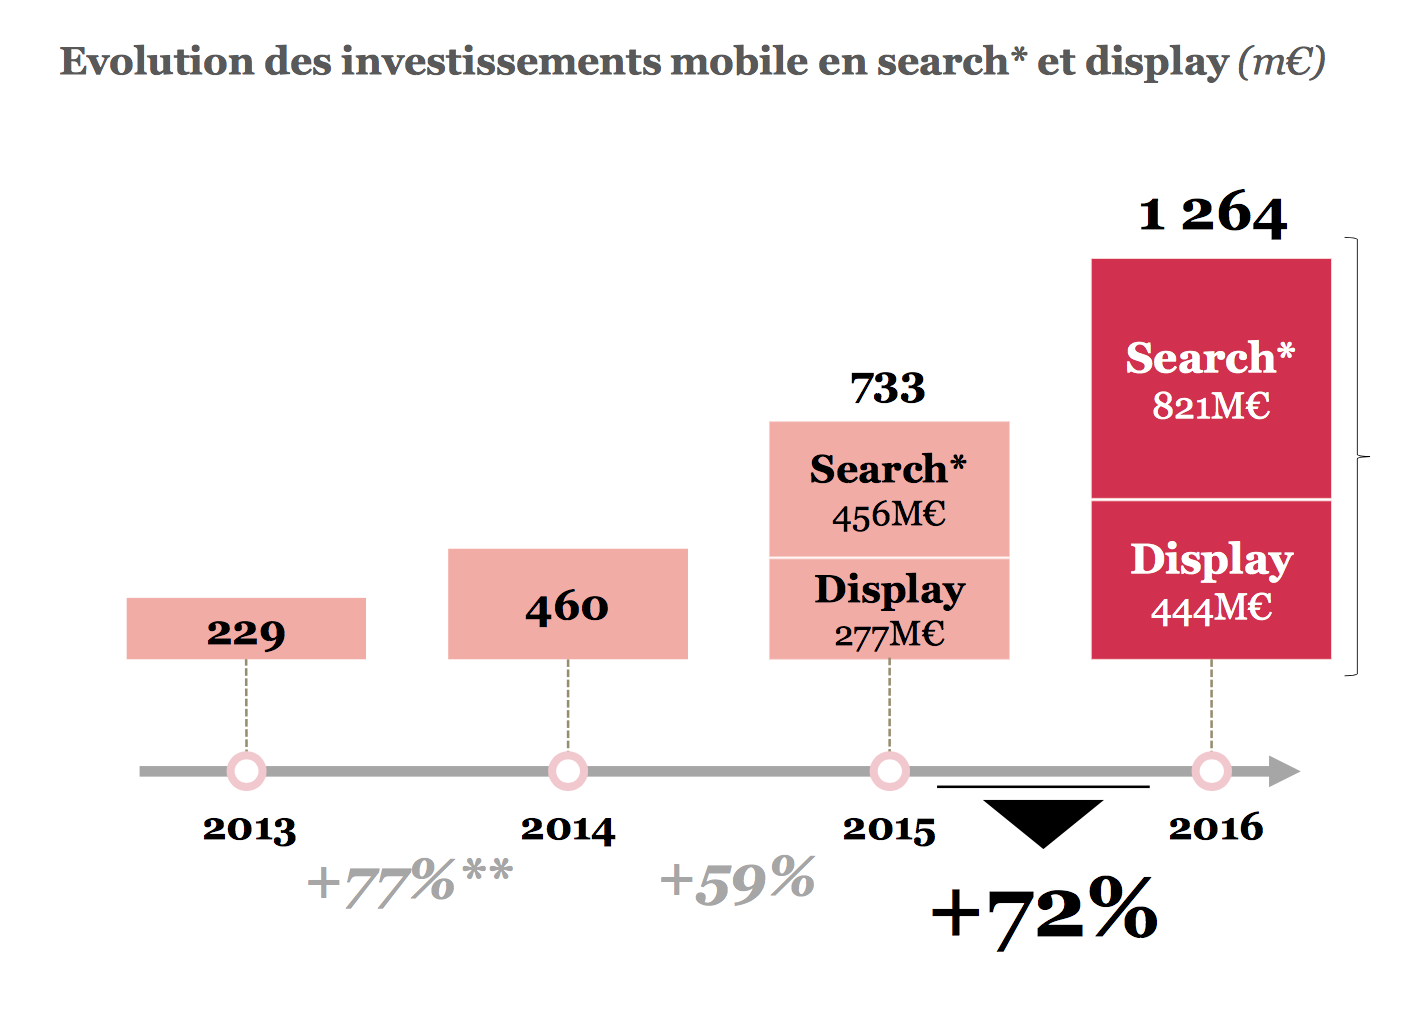 Moteurs de recherche et réseaux sociaux captent 92% des investissements publicitaires mobiles